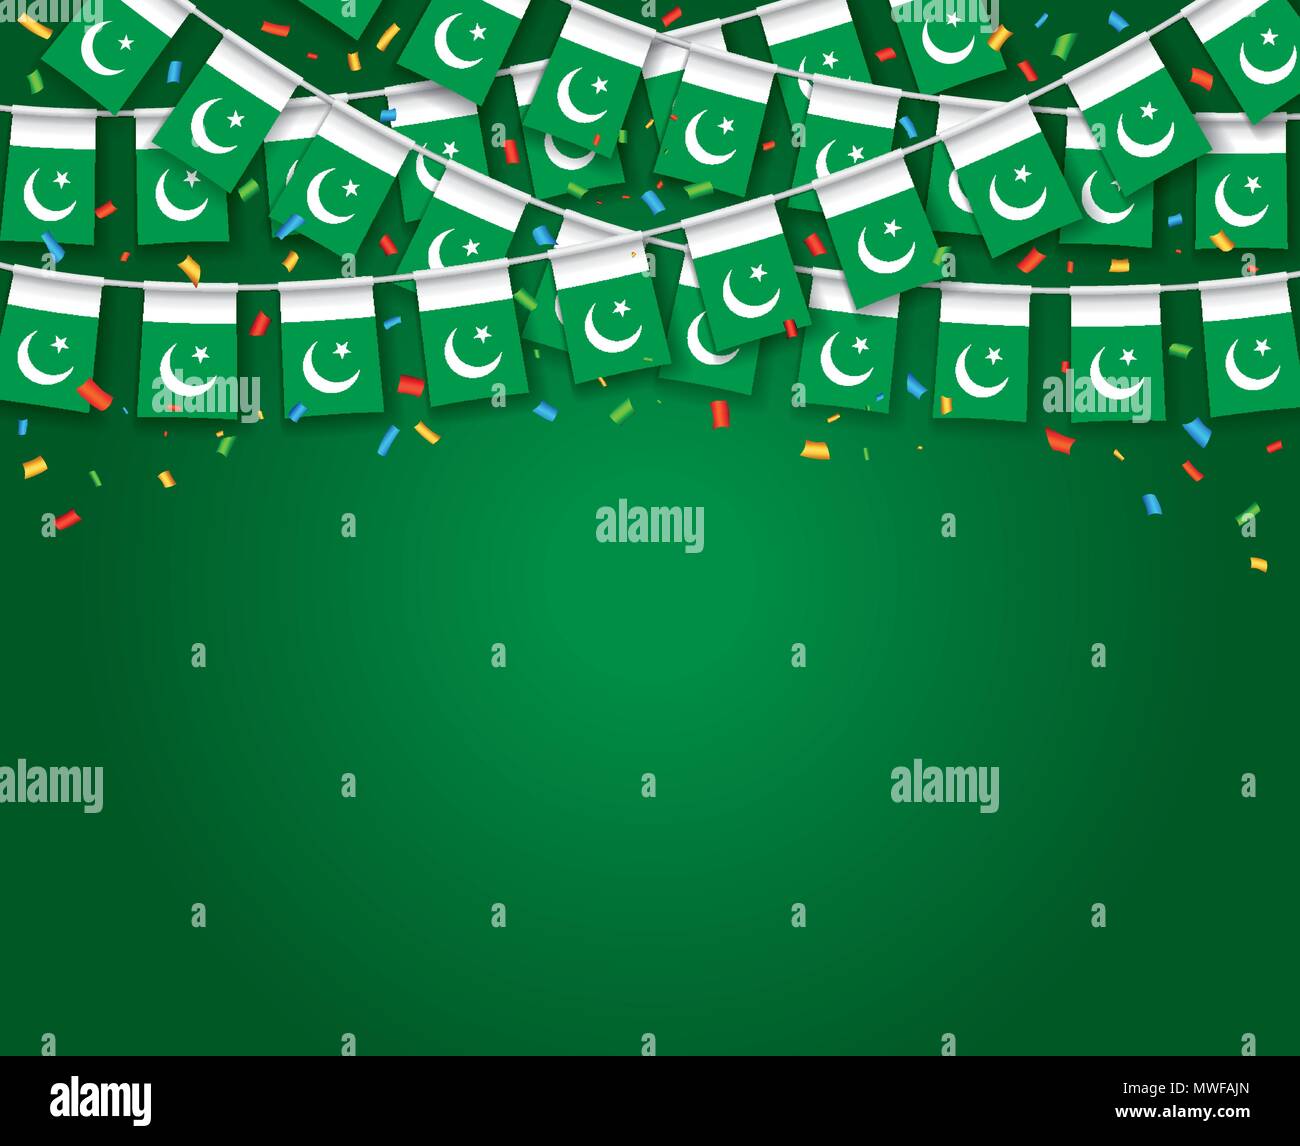 Guirlande drapeaux avec fond vert sombre bannière, pendaison Bunting flags pour la célébration du jour de l'indépendance du Pakistan. Vector illustration Illustration de Vecteur